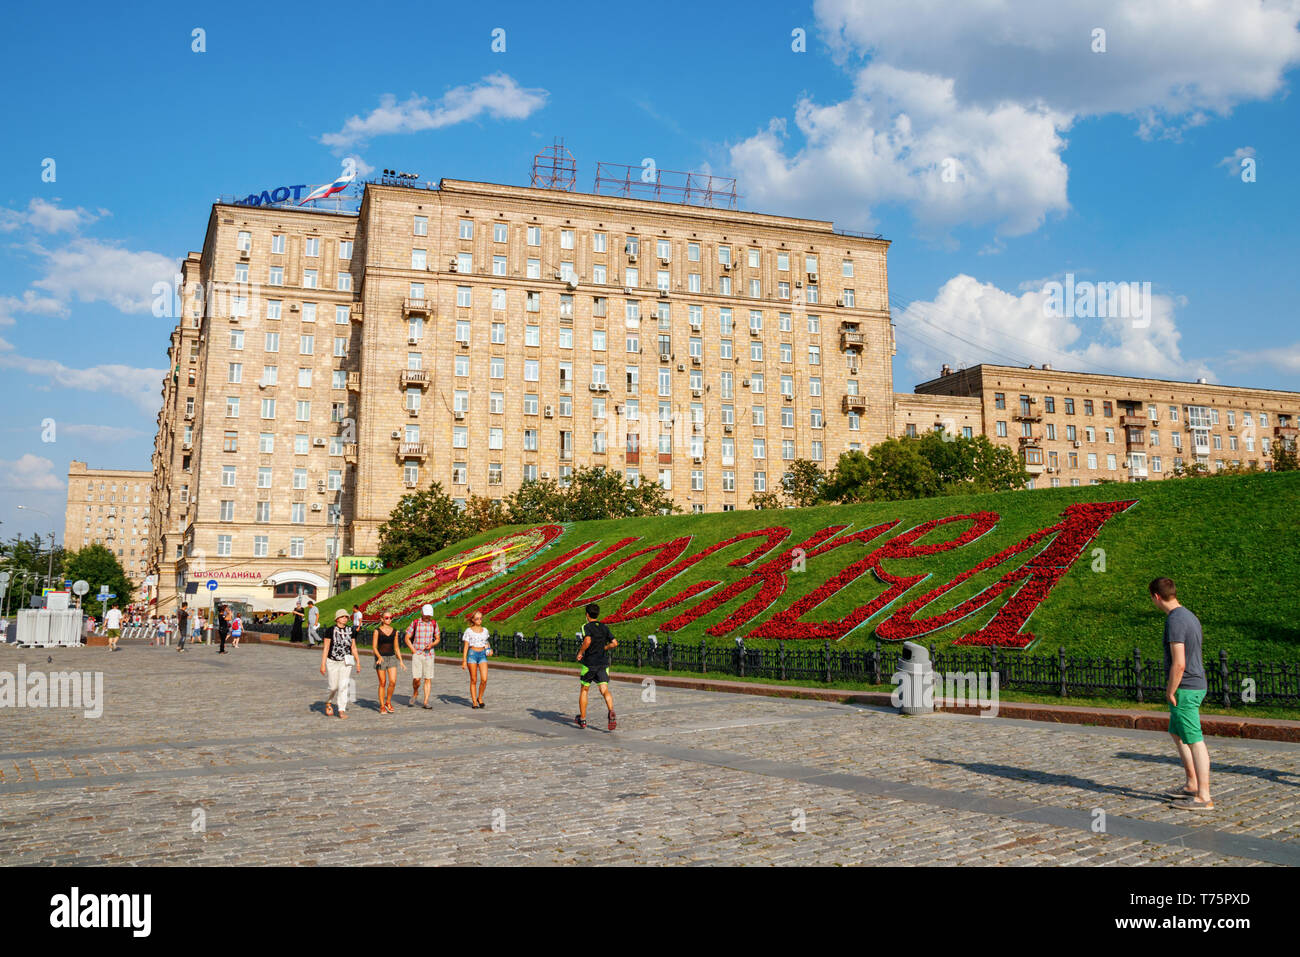 Poklonnaya Hügel, Kutusovkij Prospekt mit Wohnbauten und "Moskau" in rot Blumen geschrieben an einem sonnigen Nachmittag im Sommer. Moskau, Russland. Stockfoto